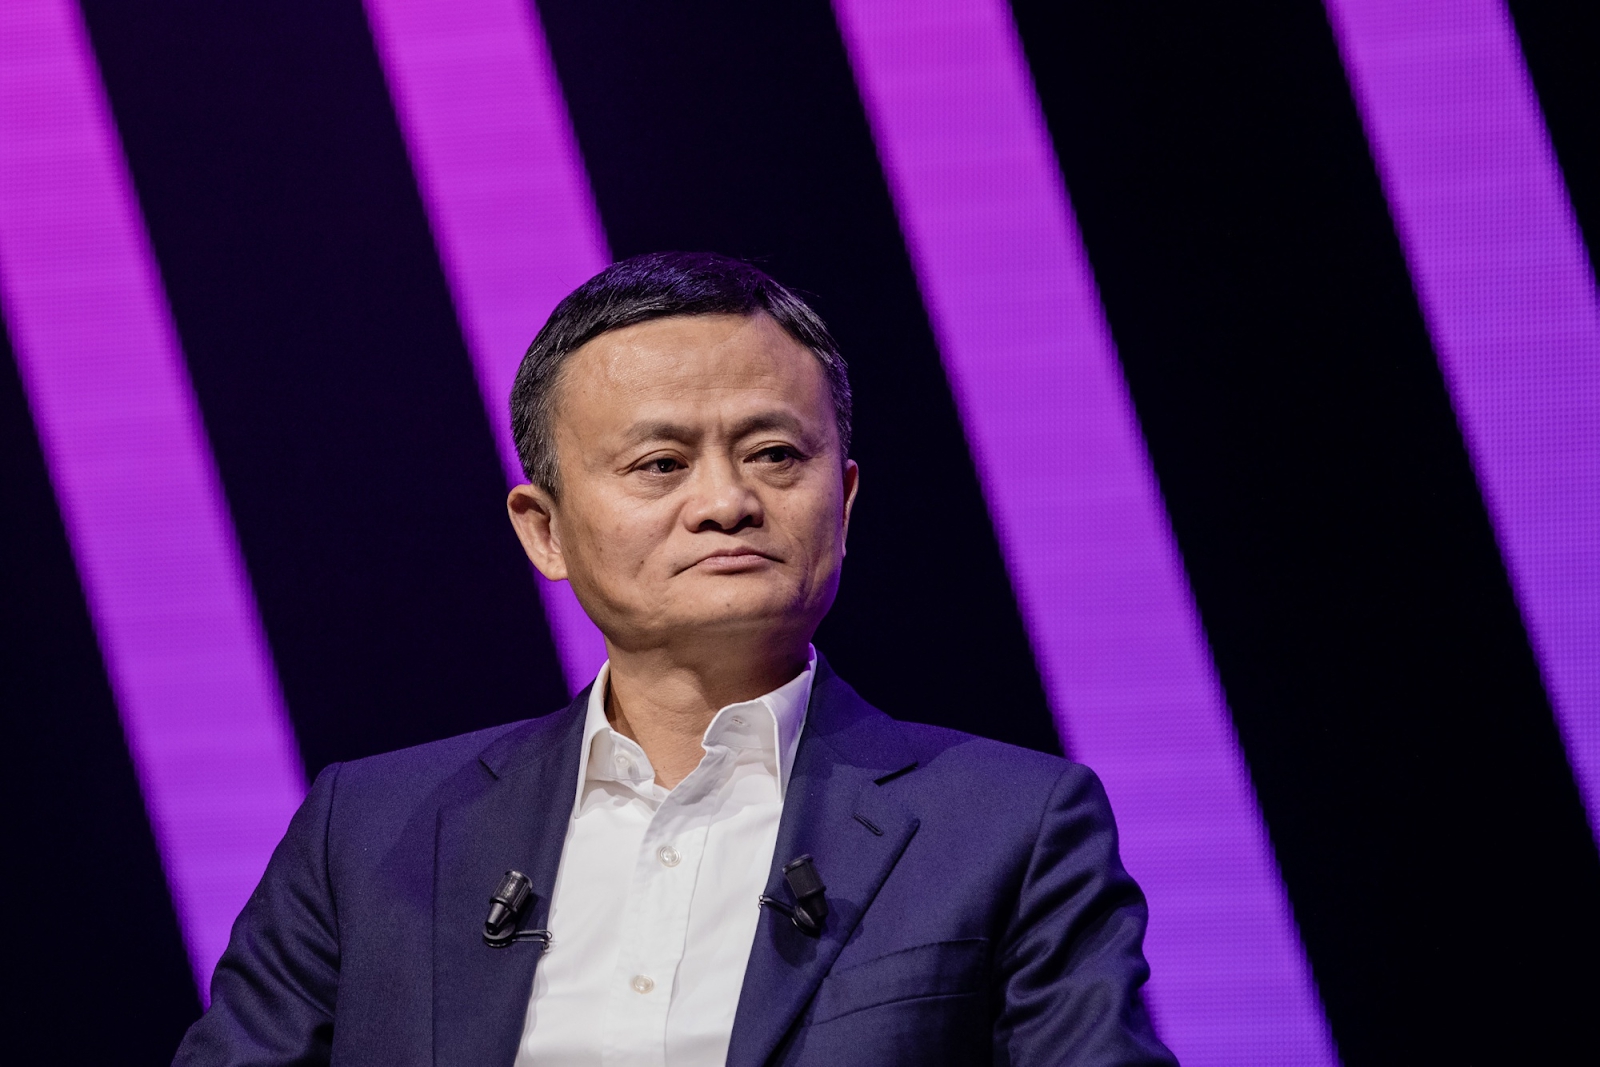 Kiện tỷ phú Jack Ma ra tòa và đòi bồi thường hơn 3 tỷ đồng, ông chú 6X bị xử thua nhưng &quot;bất đắc dĩ&quot; trở nên giàu có, ai nhìn cũng phải ghen tỵ - Ảnh 5.